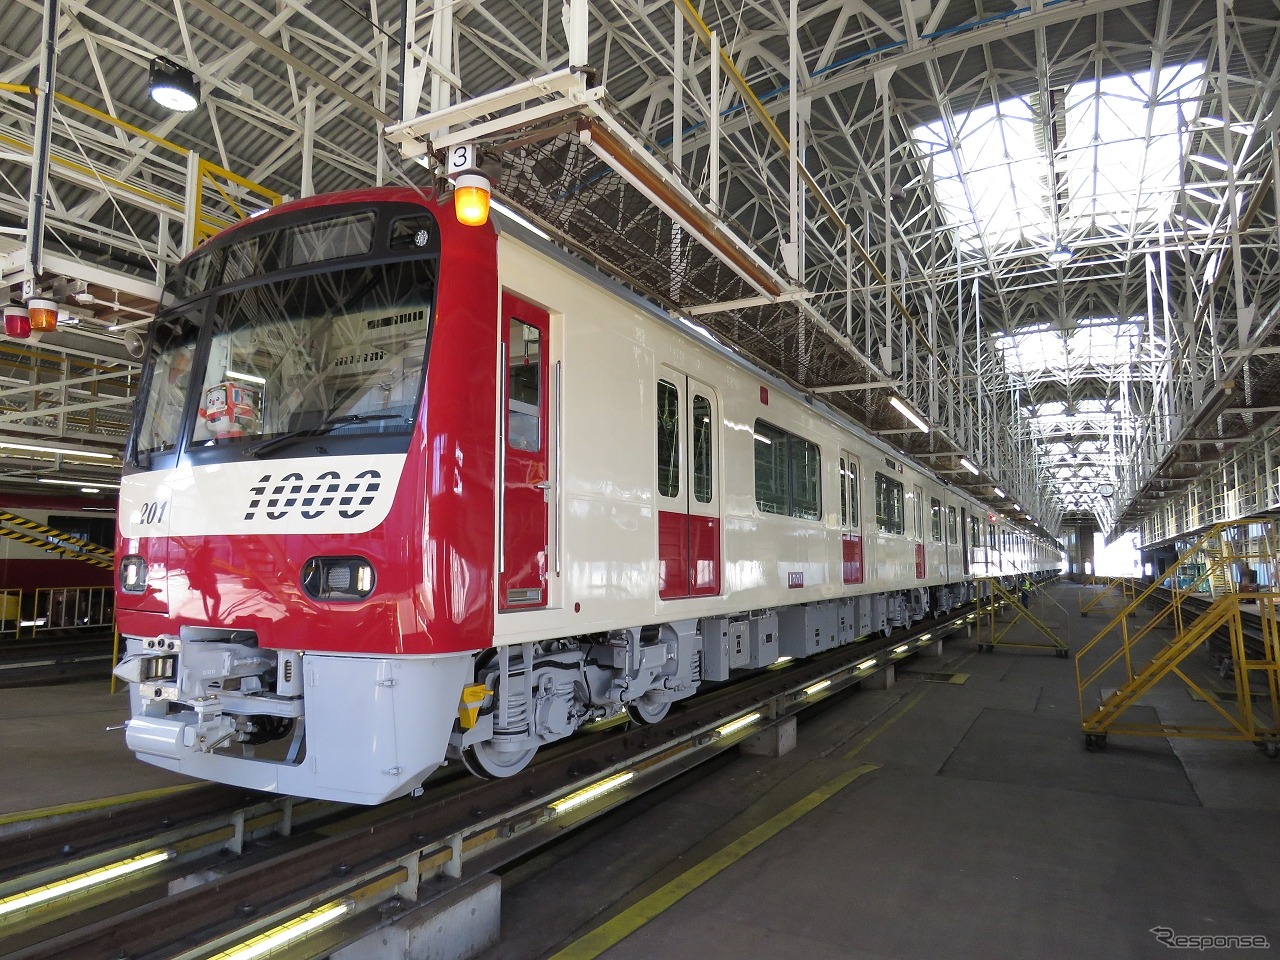 京急ファインテック久里浜事業所に搬入された第1201編成。先頭部は赤白2色の塗装が完了している。